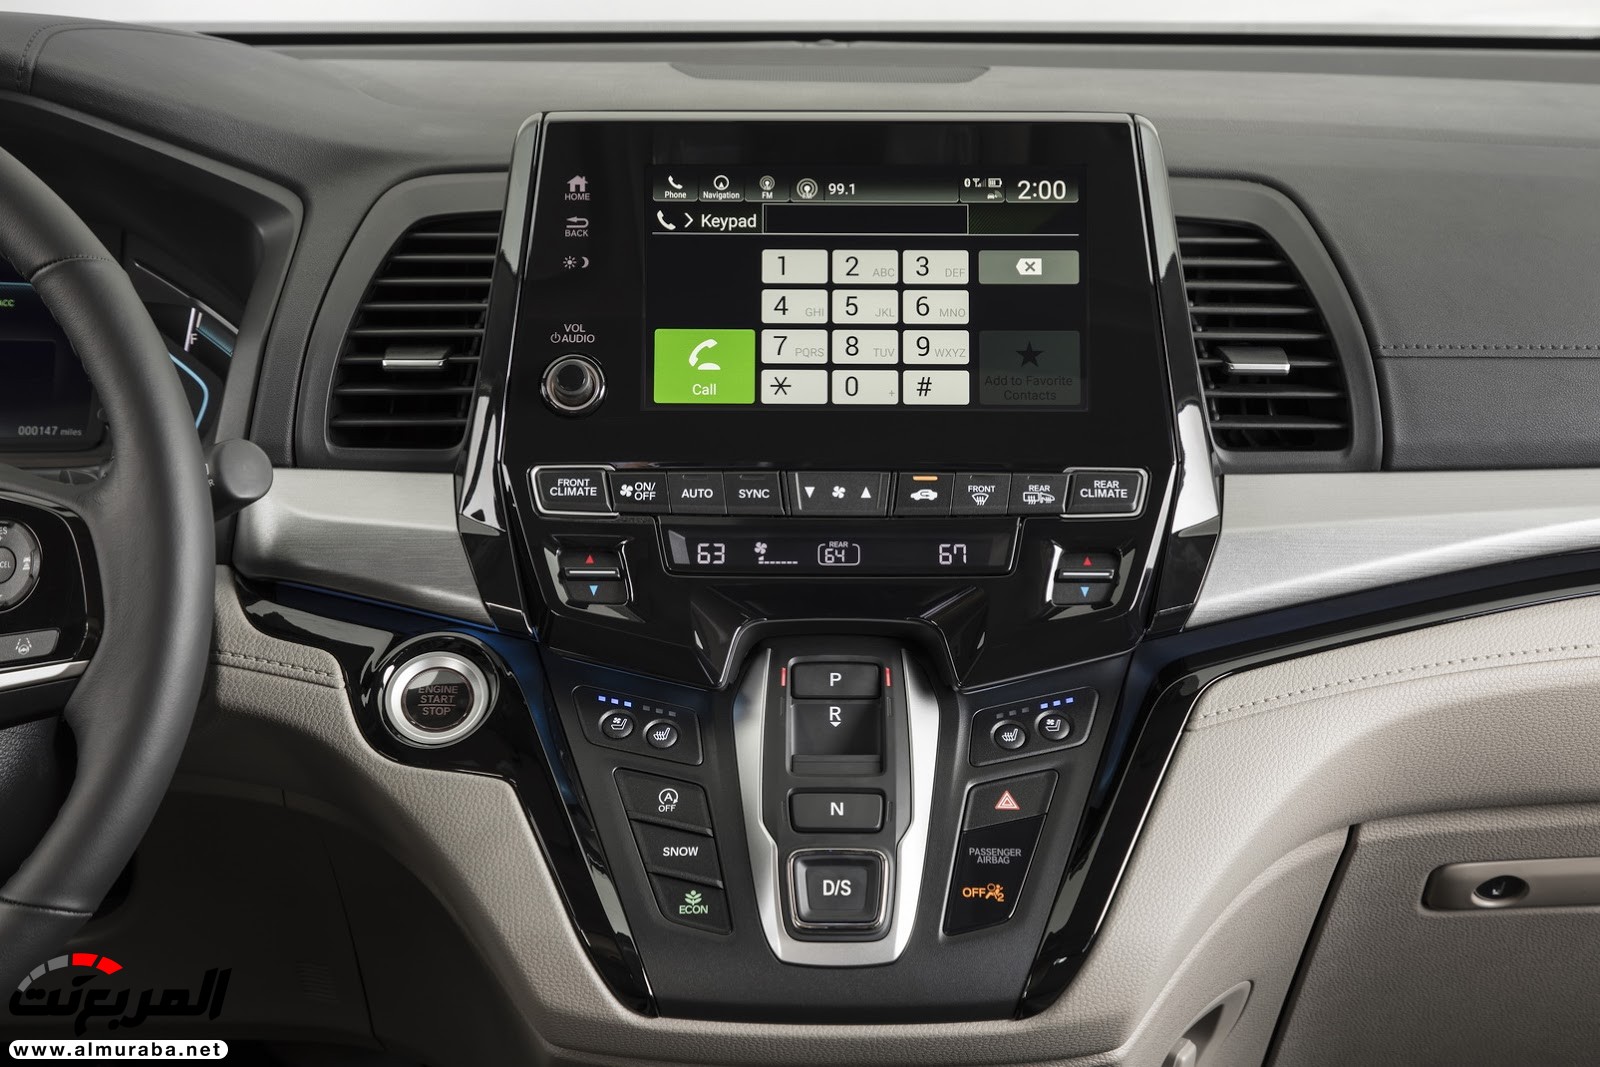 هوندا اوديسي 2018 تحصل على تقنيات جديدة وتحديثات خارجية وداخلية + صور وتقرير Honda Odyssey 21